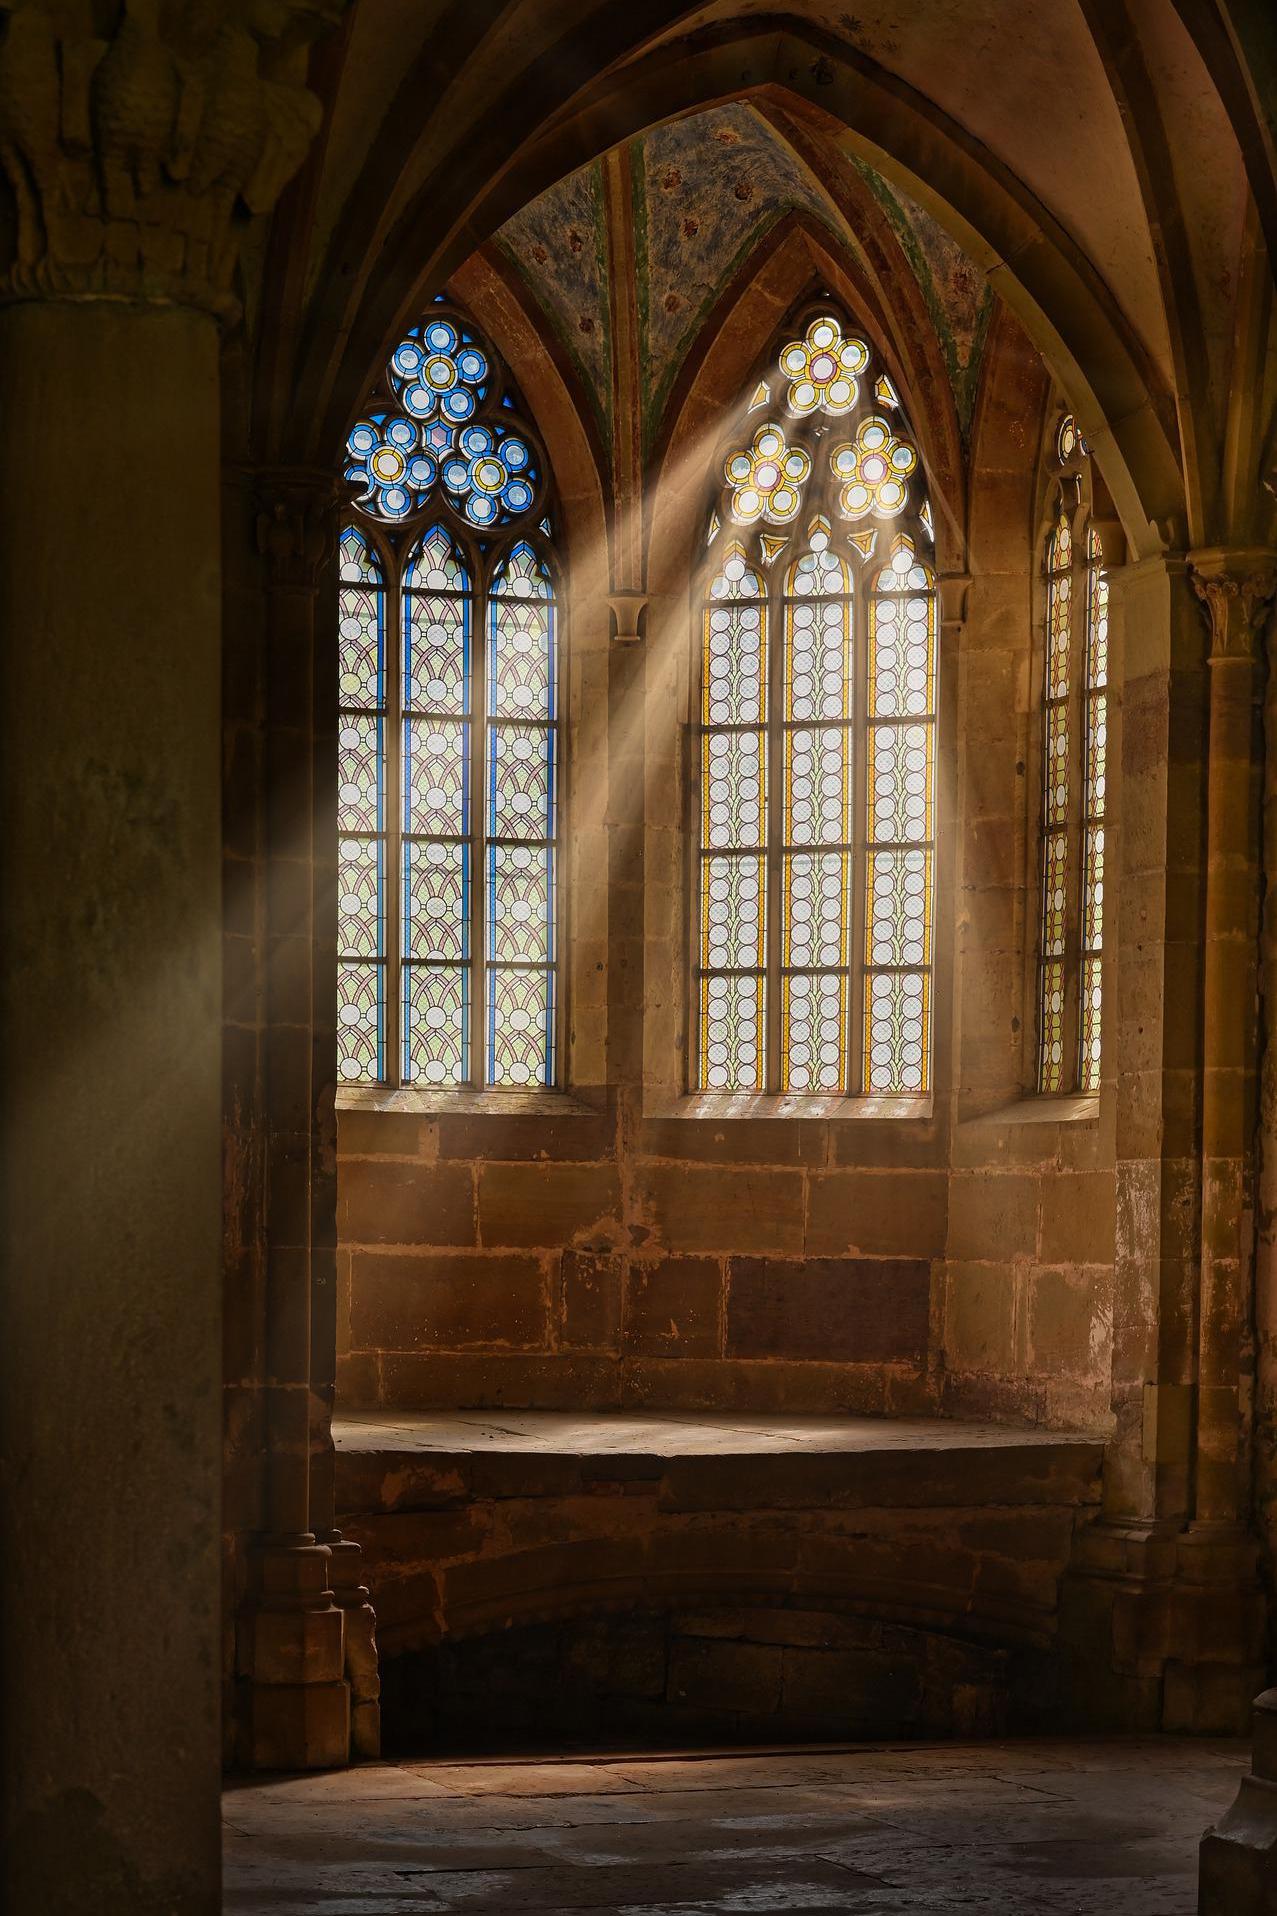 church-window-g96bc9feb2_1920 (c) Bild von Paul Henri Degrande auf Pixabay